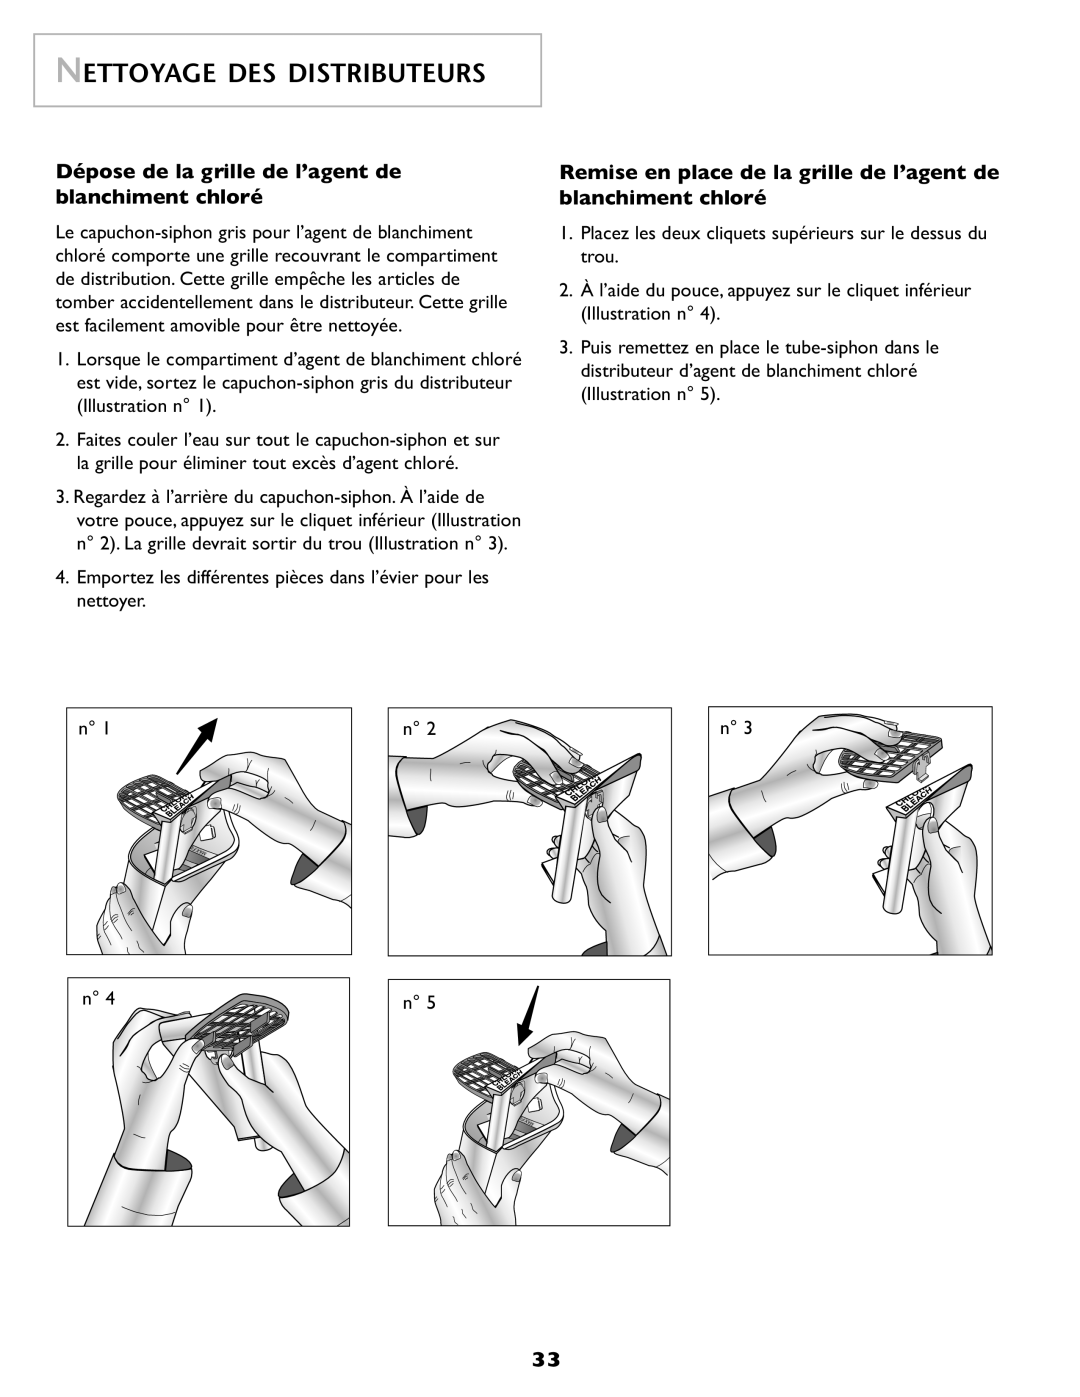 Maytag SL-3 important safety instructions Dépose de la grille de l’agent de blanchiment chloré, Nettoyage Des Distributeurs 